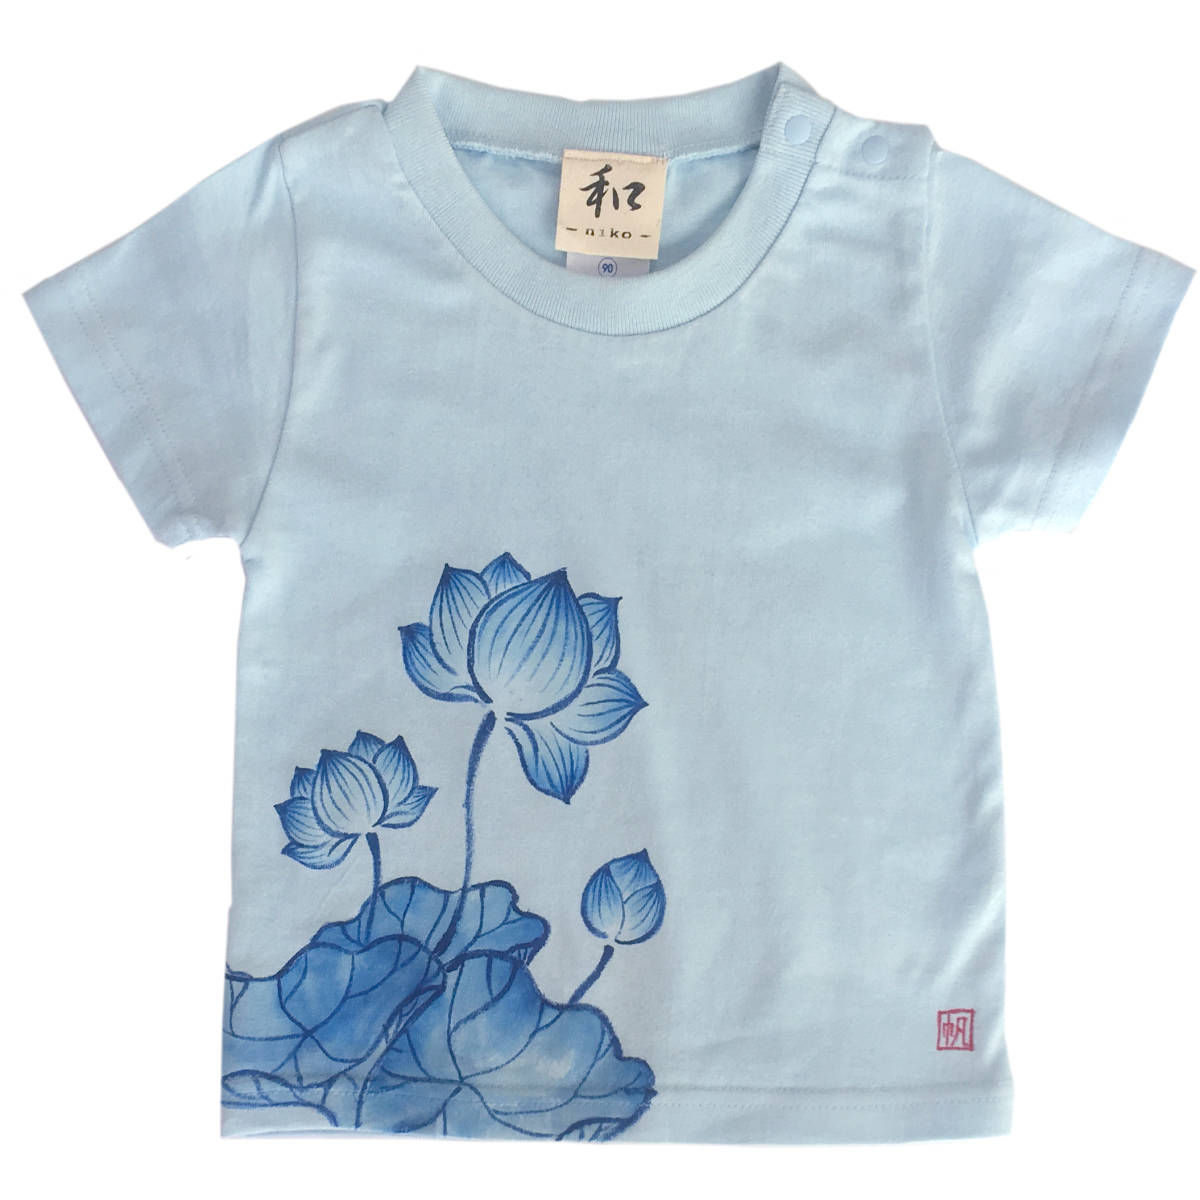 बच्चों की टी-शर्ट का आकार 120 नीला कमल पैटर्न टी-शर्ट हाथ से पेंट किया हुआ कमल फूल पैटर्न टी-शर्ट छोटी आस्तीन जापानी पैटर्न जापानी शैली रेट्रो हस्तनिर्मित, सबसे ऊपर, छोटी बाजू की टी-शर्ट, 120(115~124 सेमी)